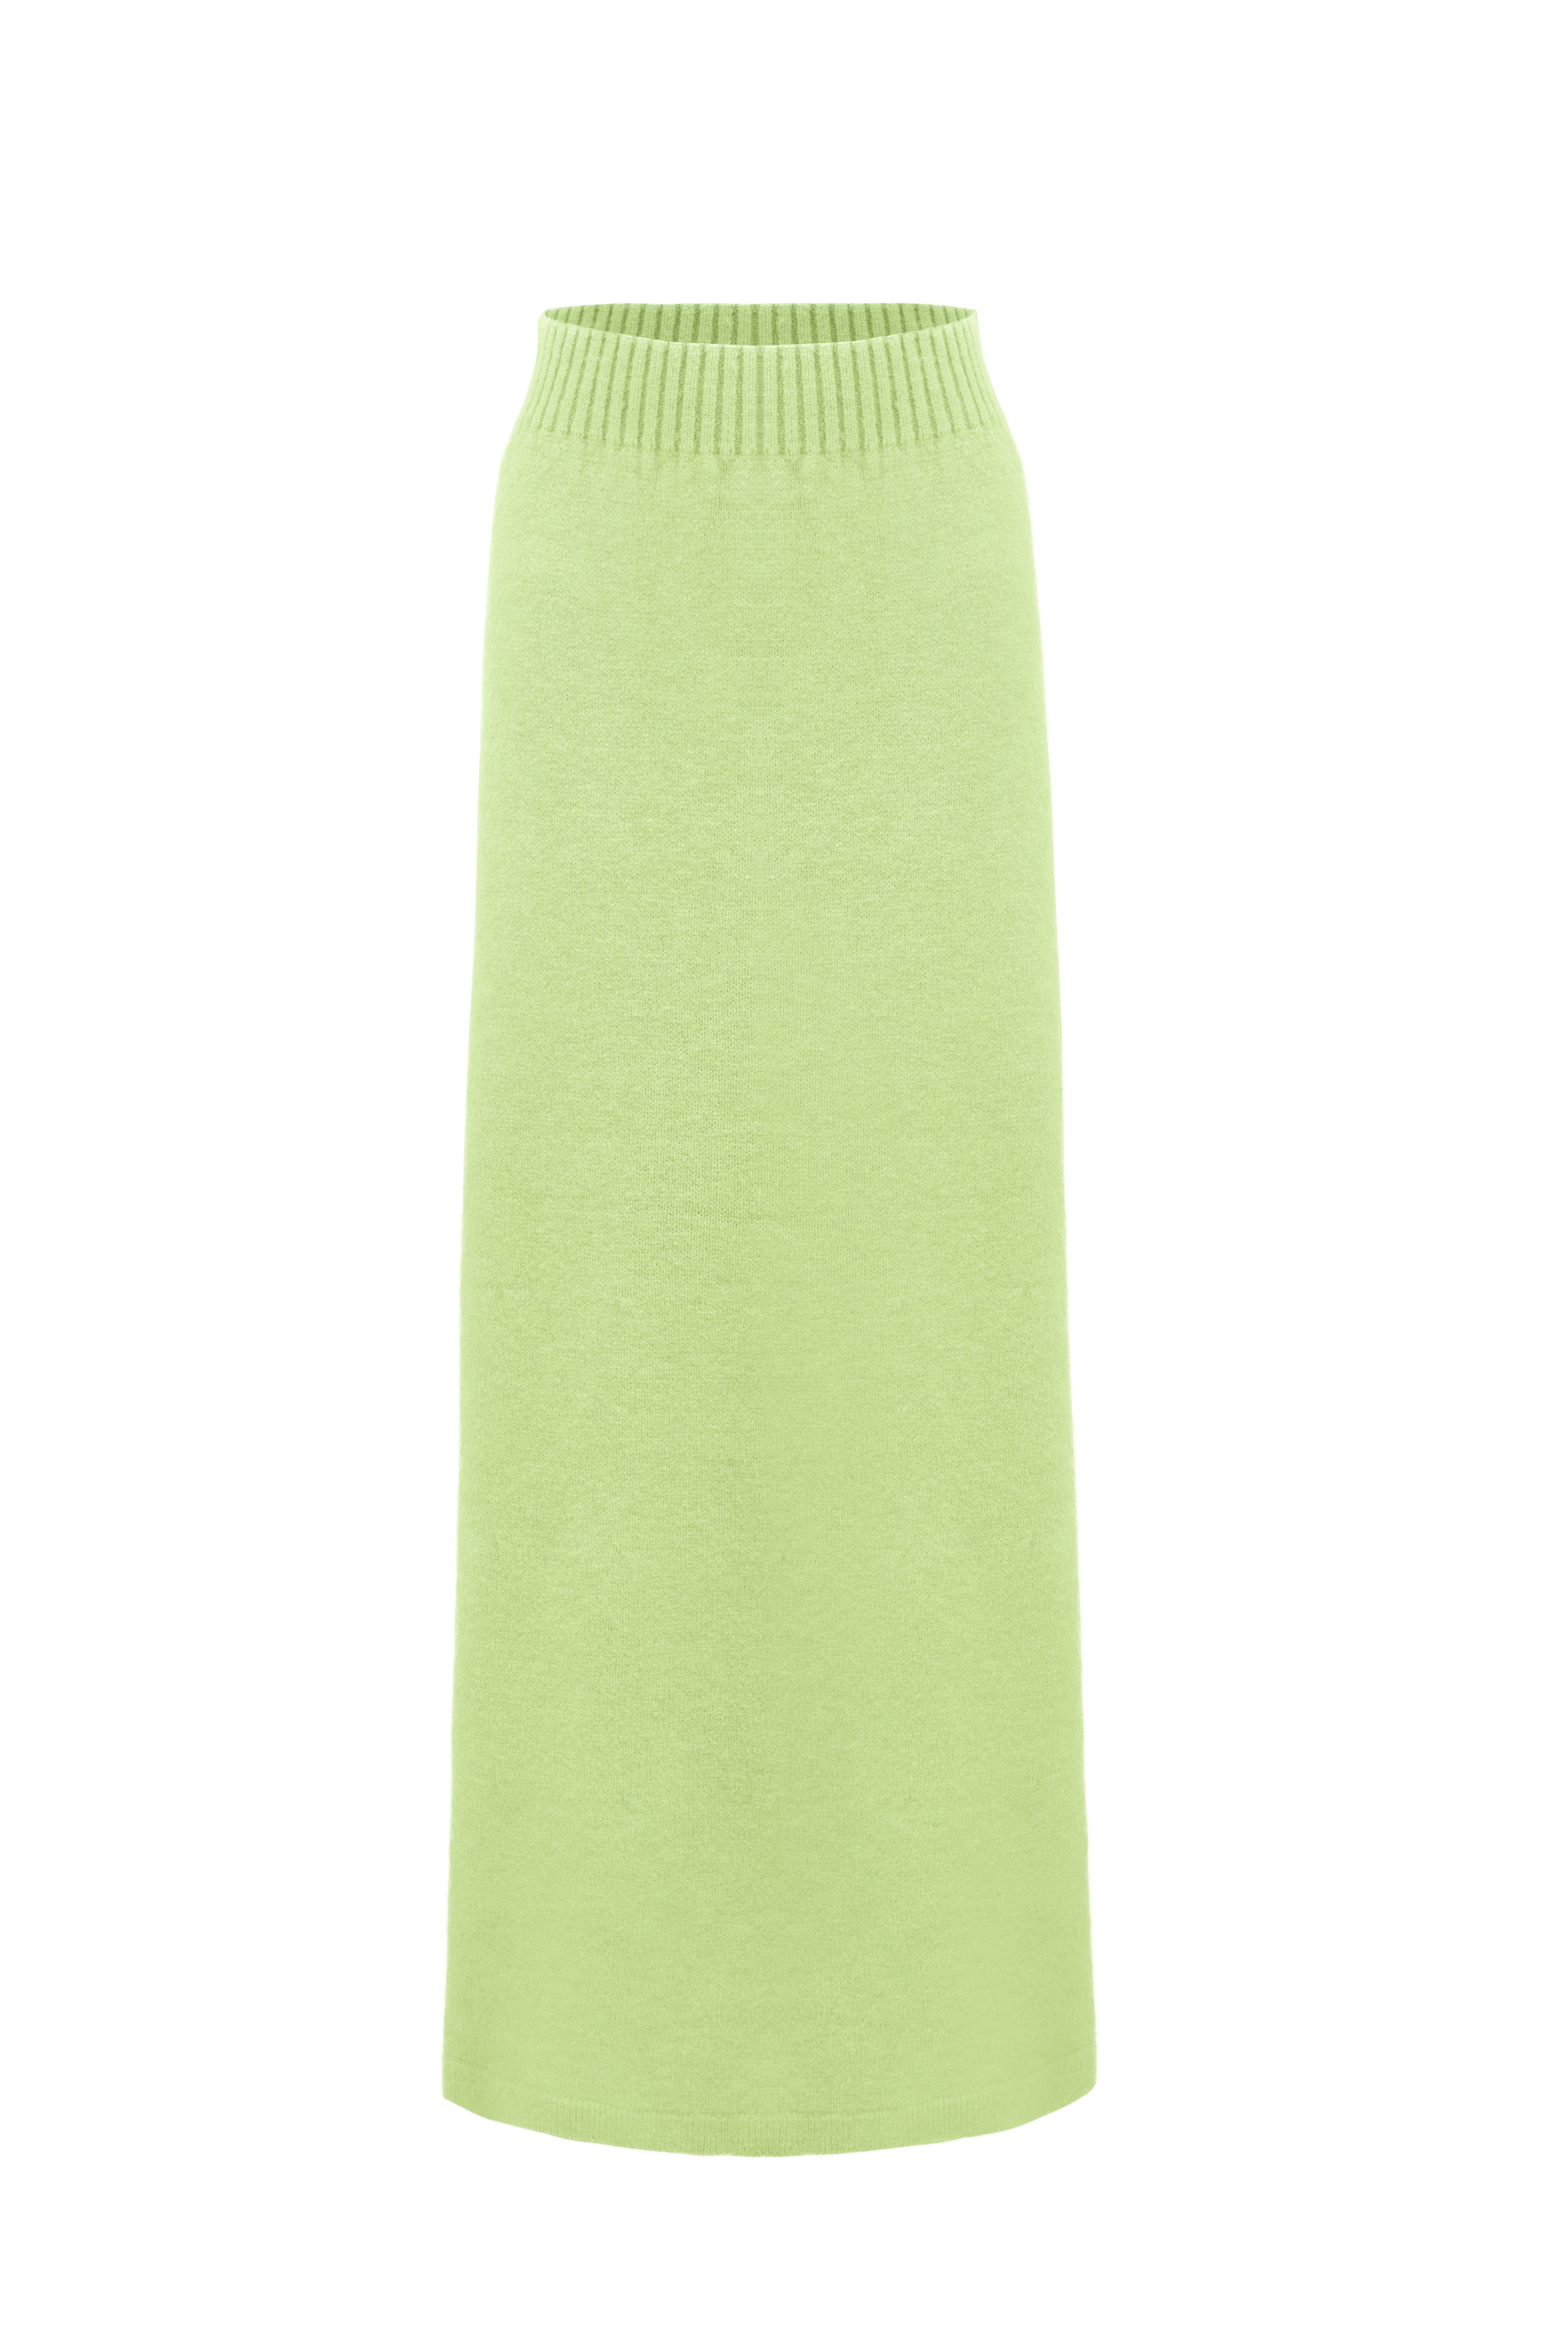 Skirt 5064-22 Light-green from BRUSNiKA